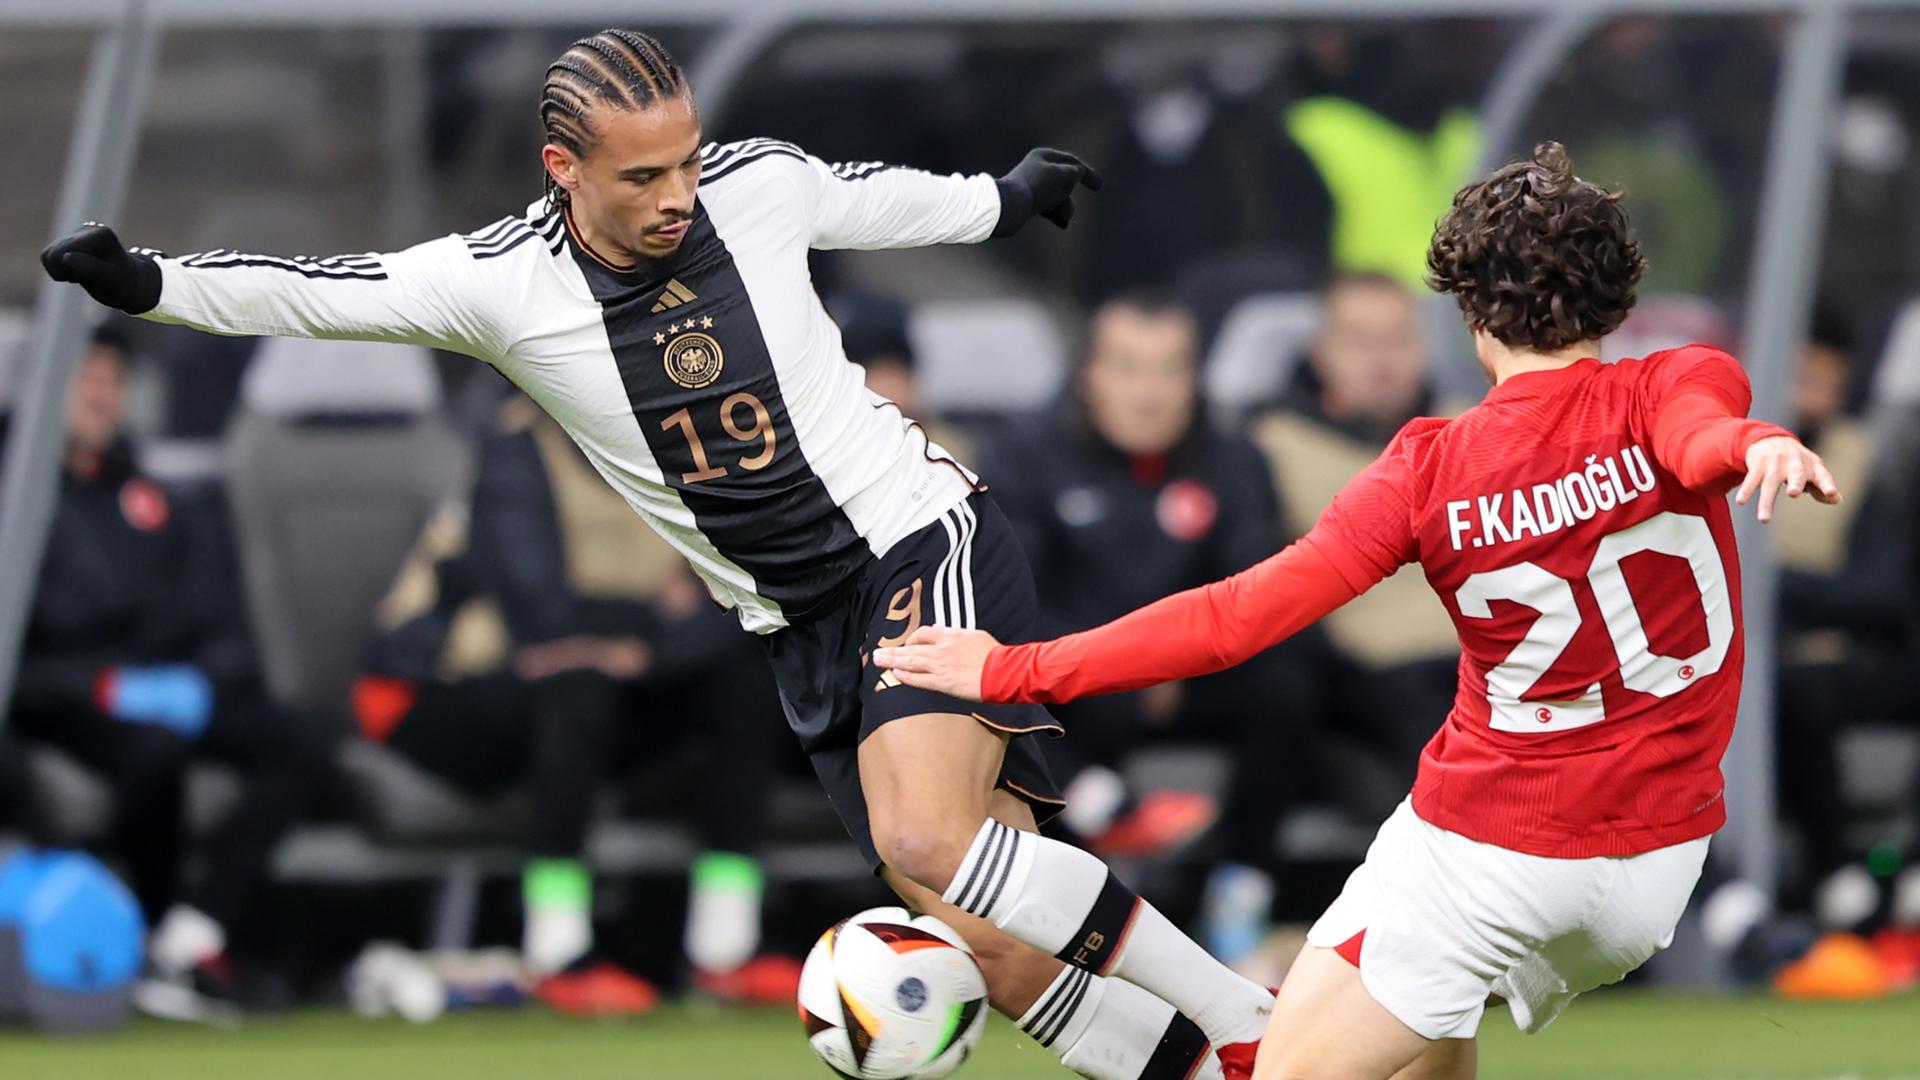 Ein deutscher Fußball-Spieler dribbelt mit dem Ball und wird von einem türkischen Gegenspieler gestört.